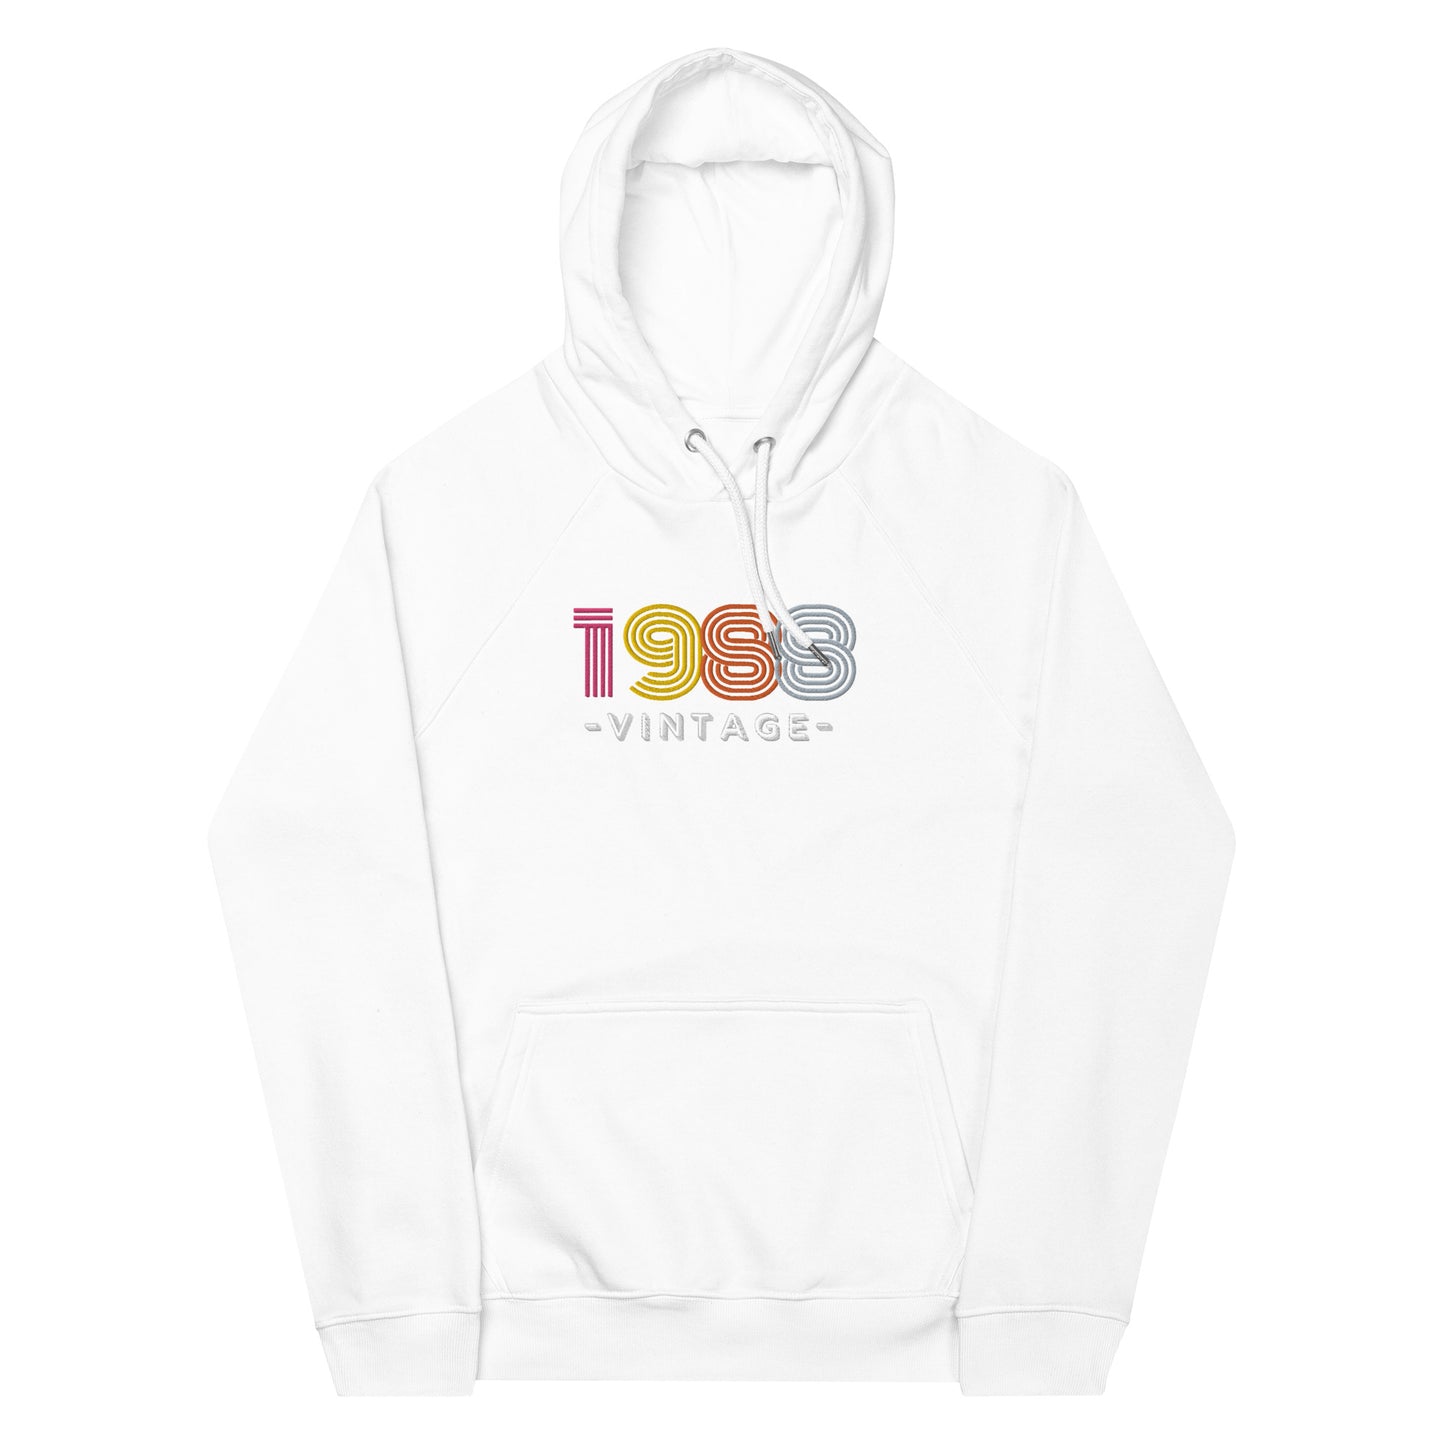 0-A-00 1988 vintage Unisex eco raglan hoodie